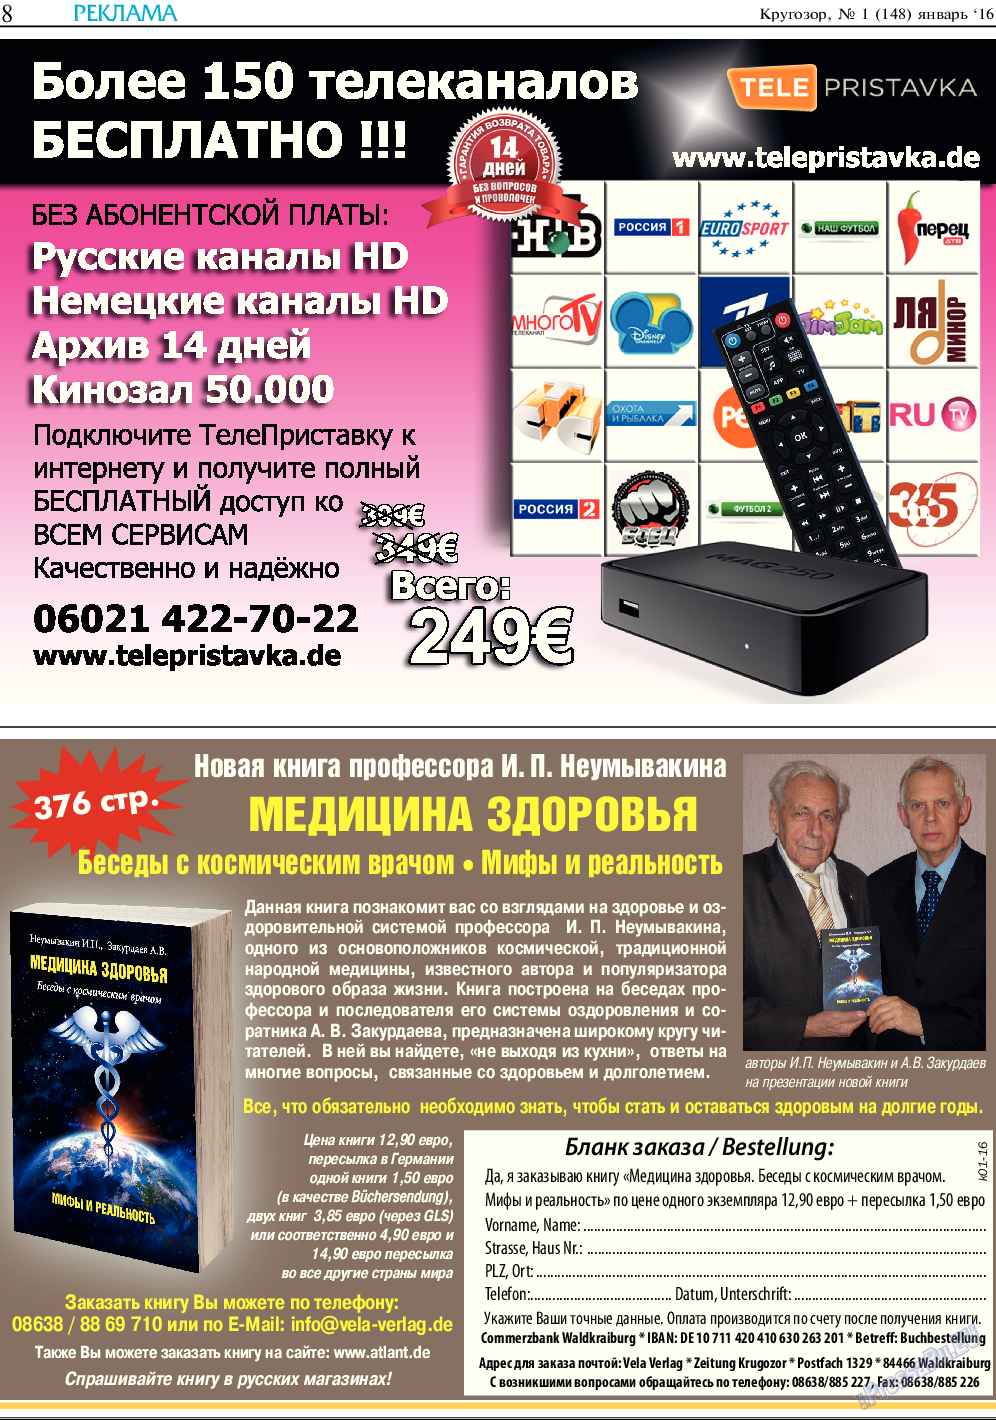 Кругозор, газета. 2016 №1 стр.8